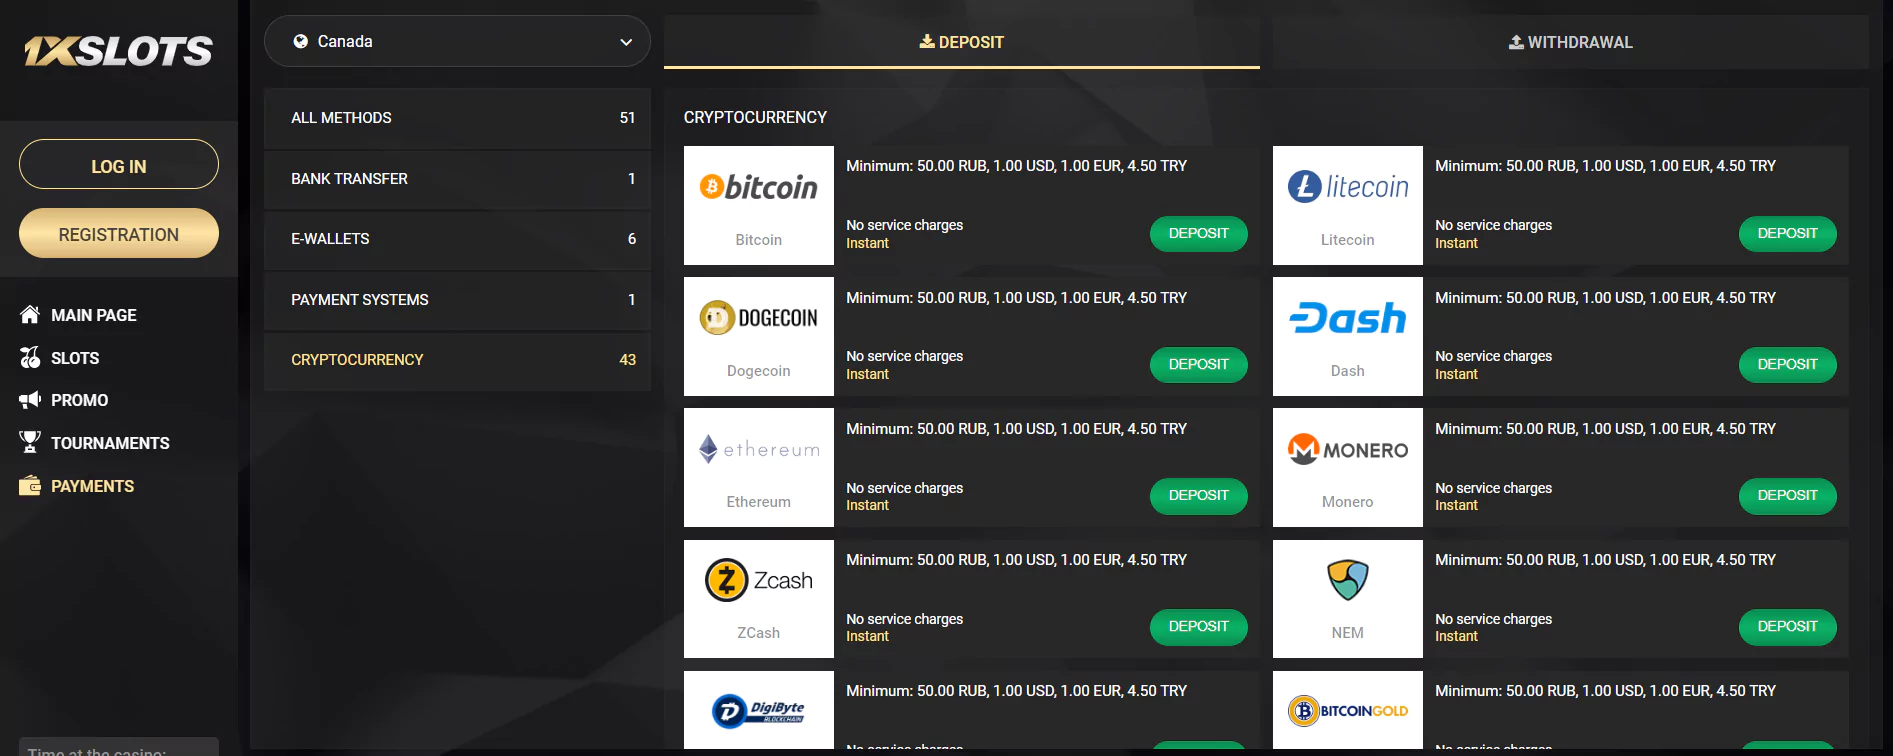 Screenshot of Deposit Options in Online Bitcoin Casino in Canada